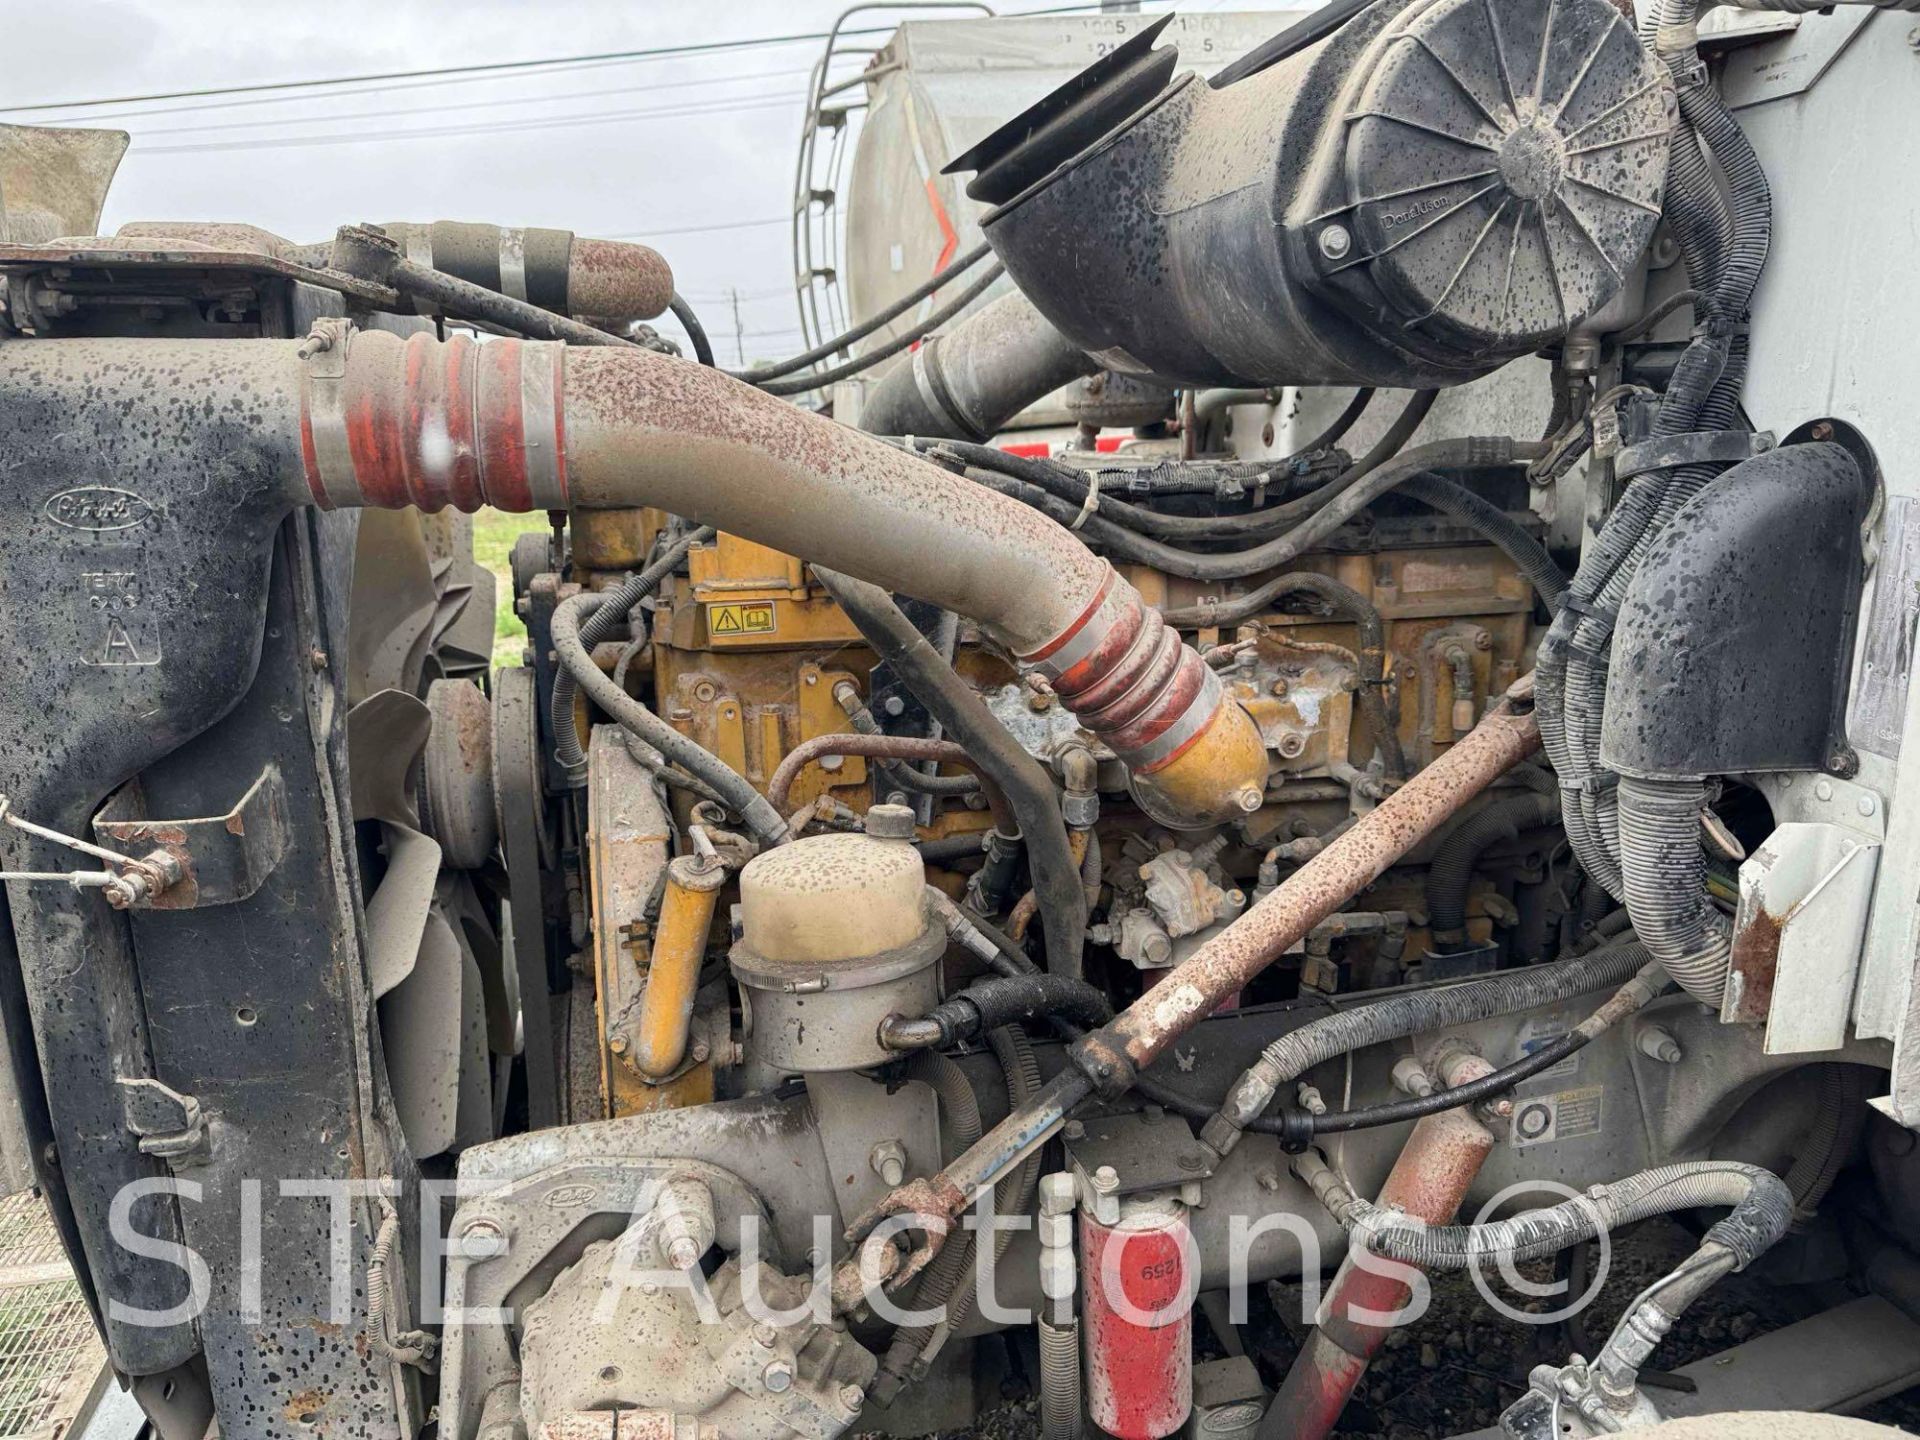 2004 Peterbilt 385 T/A Fuel Truck - Image 10 of 25